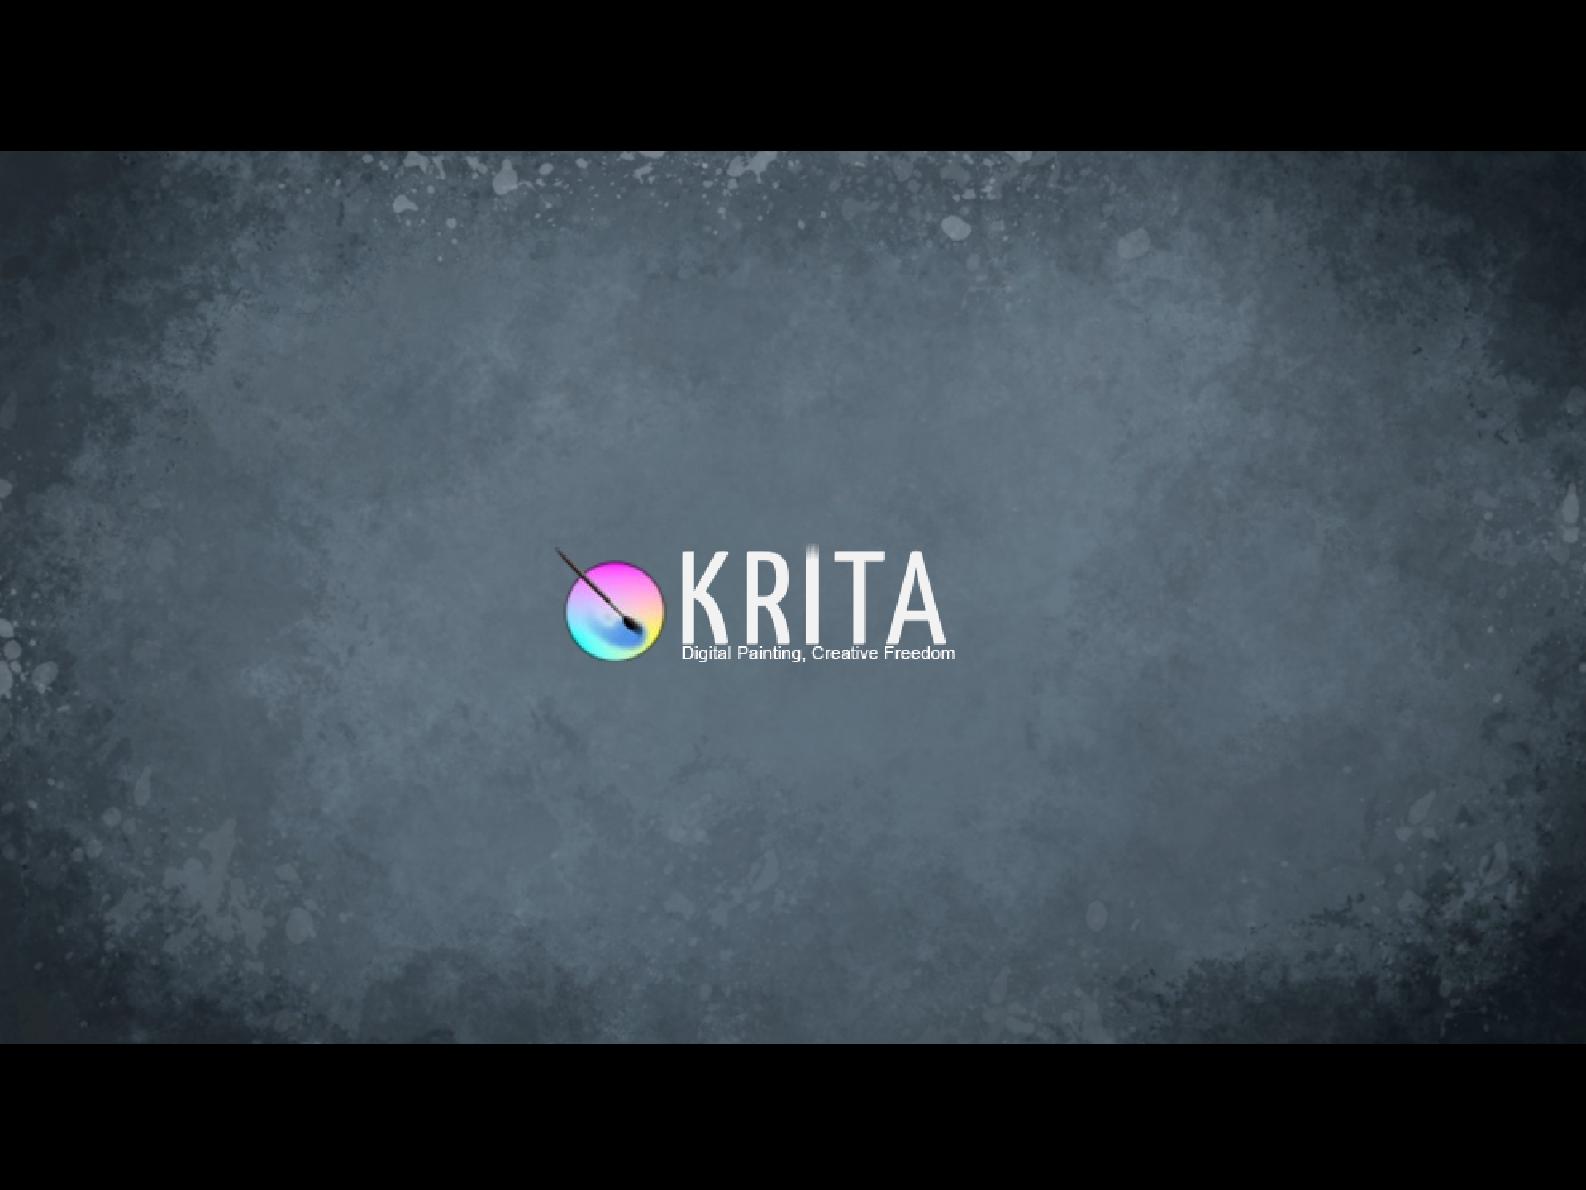 Файл:Krita — графический редактор для художников (Дмитрий Казаков, OSEDUCONF-2014).pdf